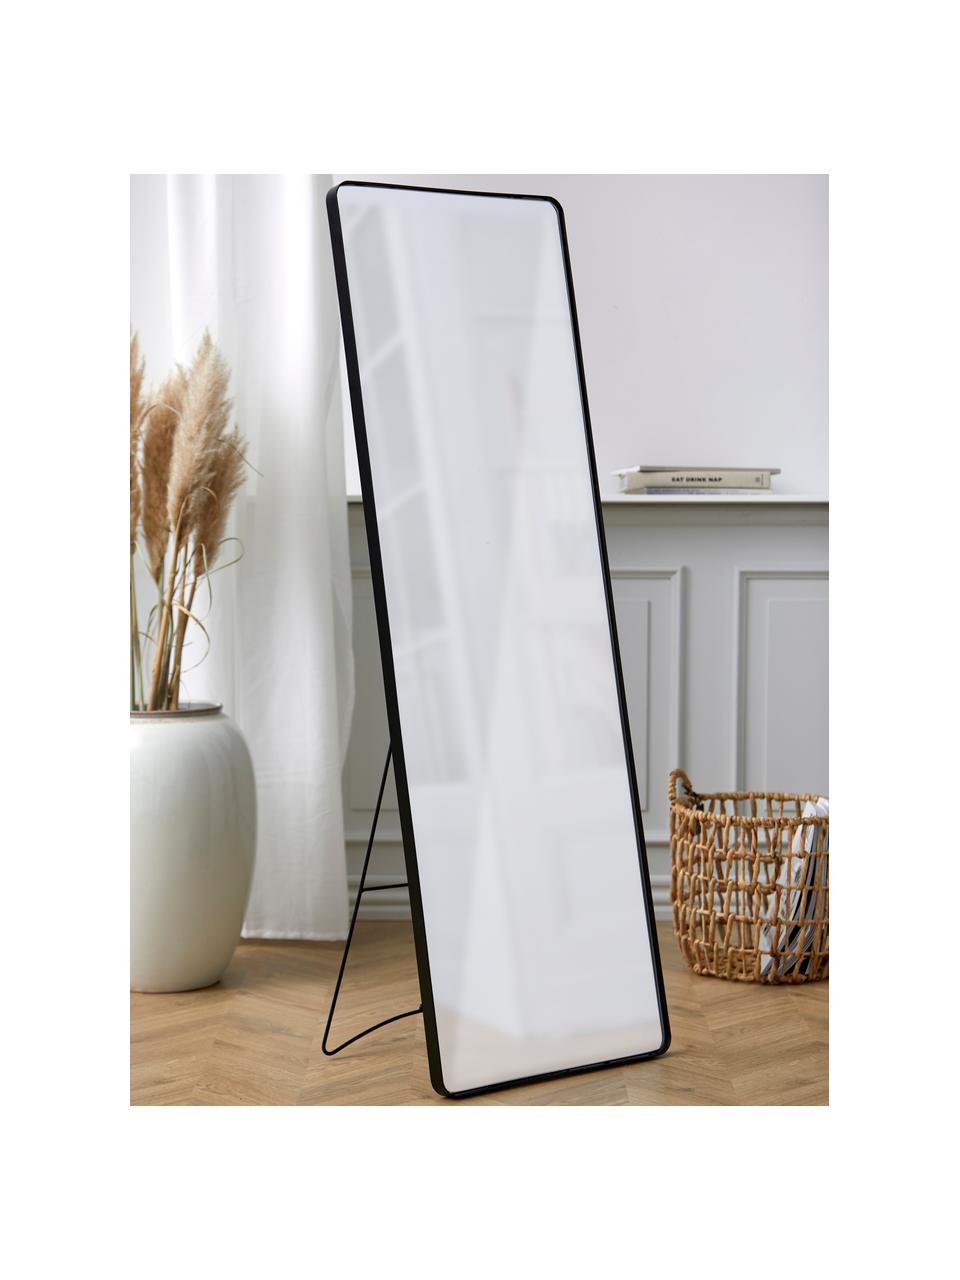 Eckiger Standspiegel Stefo mit schwarzem Metallrahmen, Rahmen: Metall, beschichtet, Spiegelfläche: Spiegelglas, Schwarz, B 45 x H 140 cm